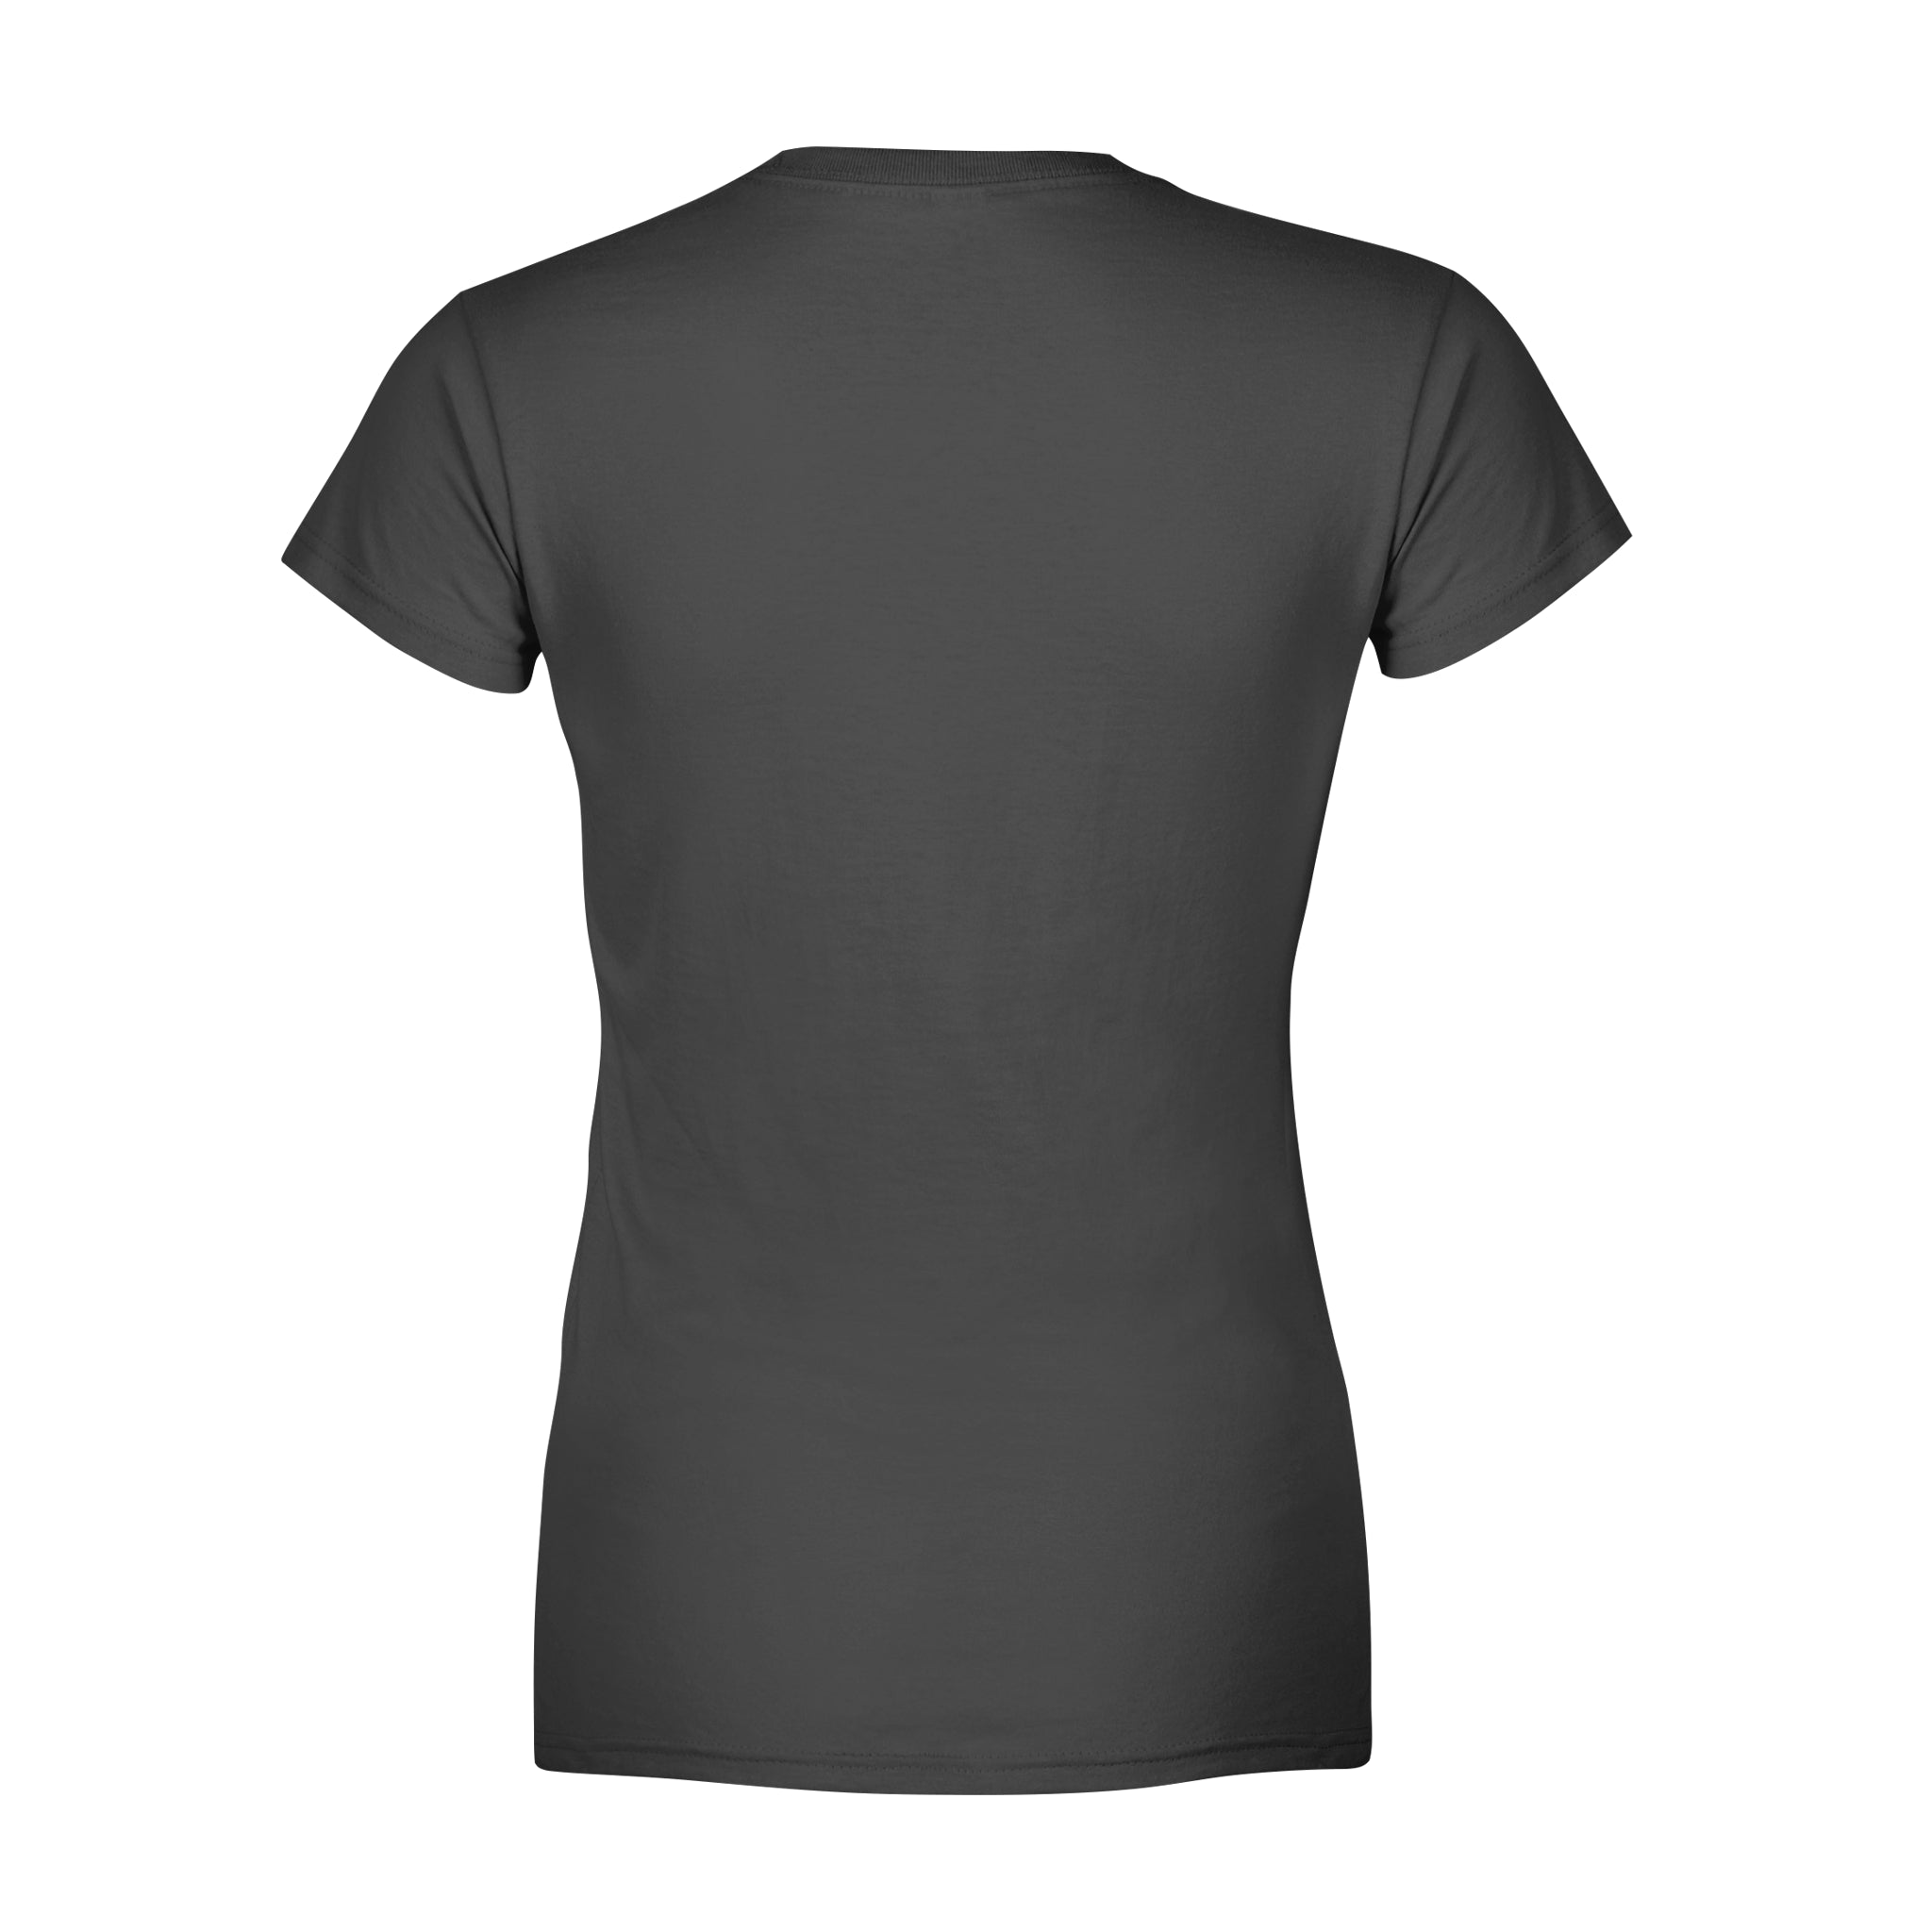 MISTAKEN -  Women's T-shirt